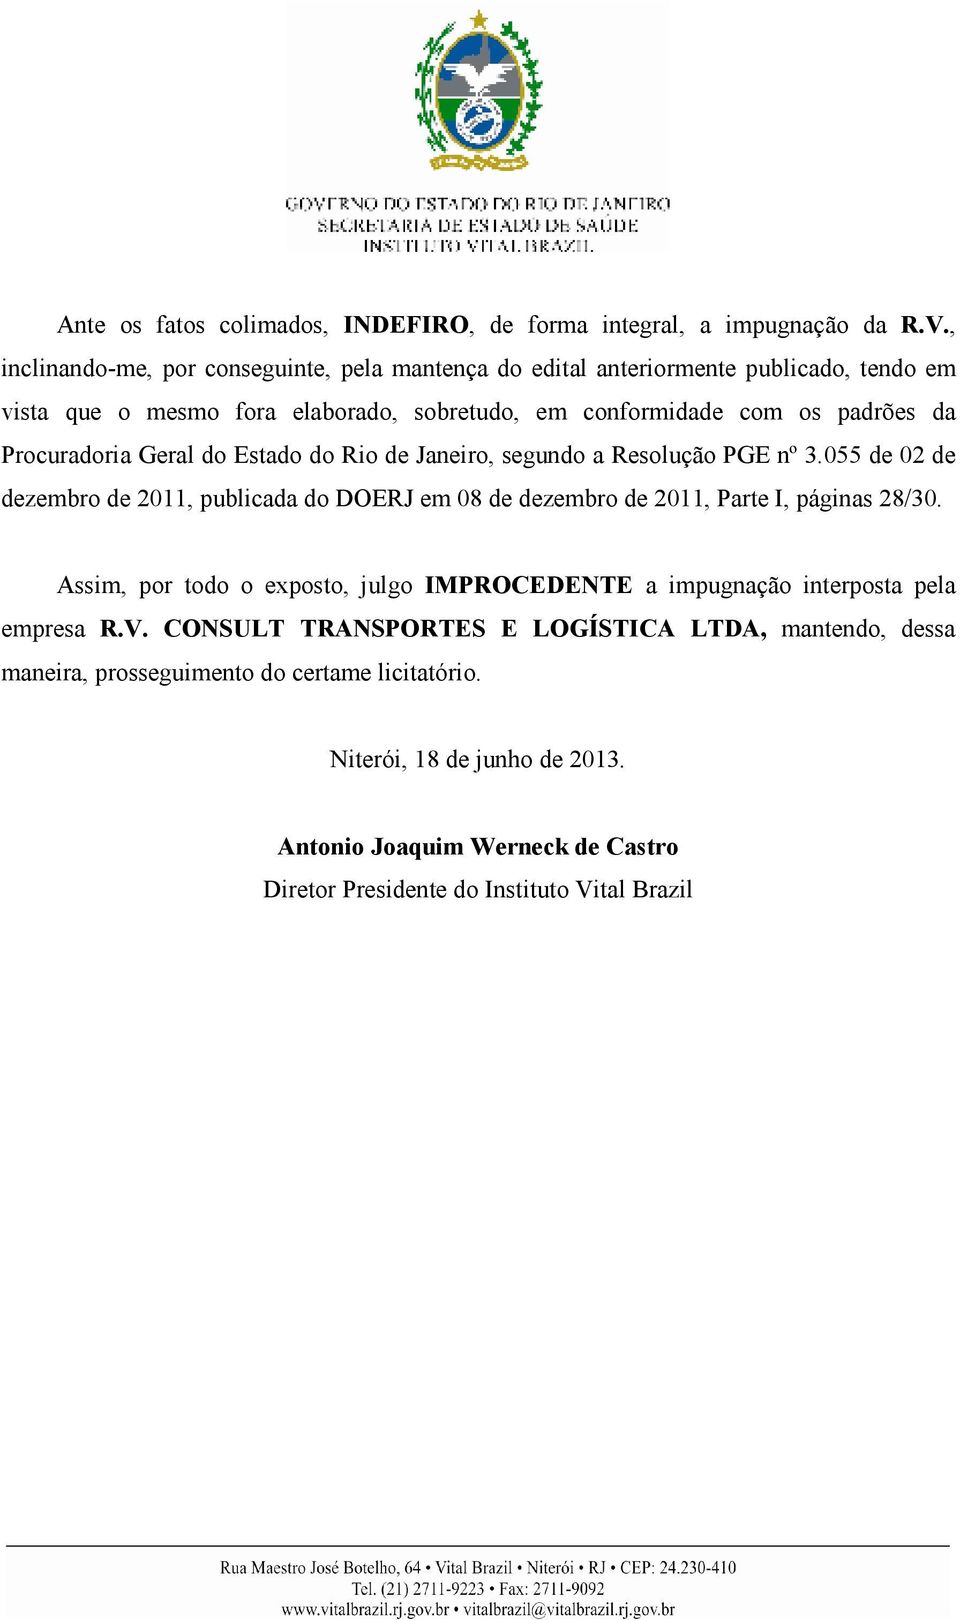 Procuradoria Geral do Estado do Rio de Janeiro, segundo a Resolução PGE nº 3.055 de 02 de dezembro de 2011, publicada do DOERJ em 08 de dezembro de 2011, Parte I, páginas 28/30.